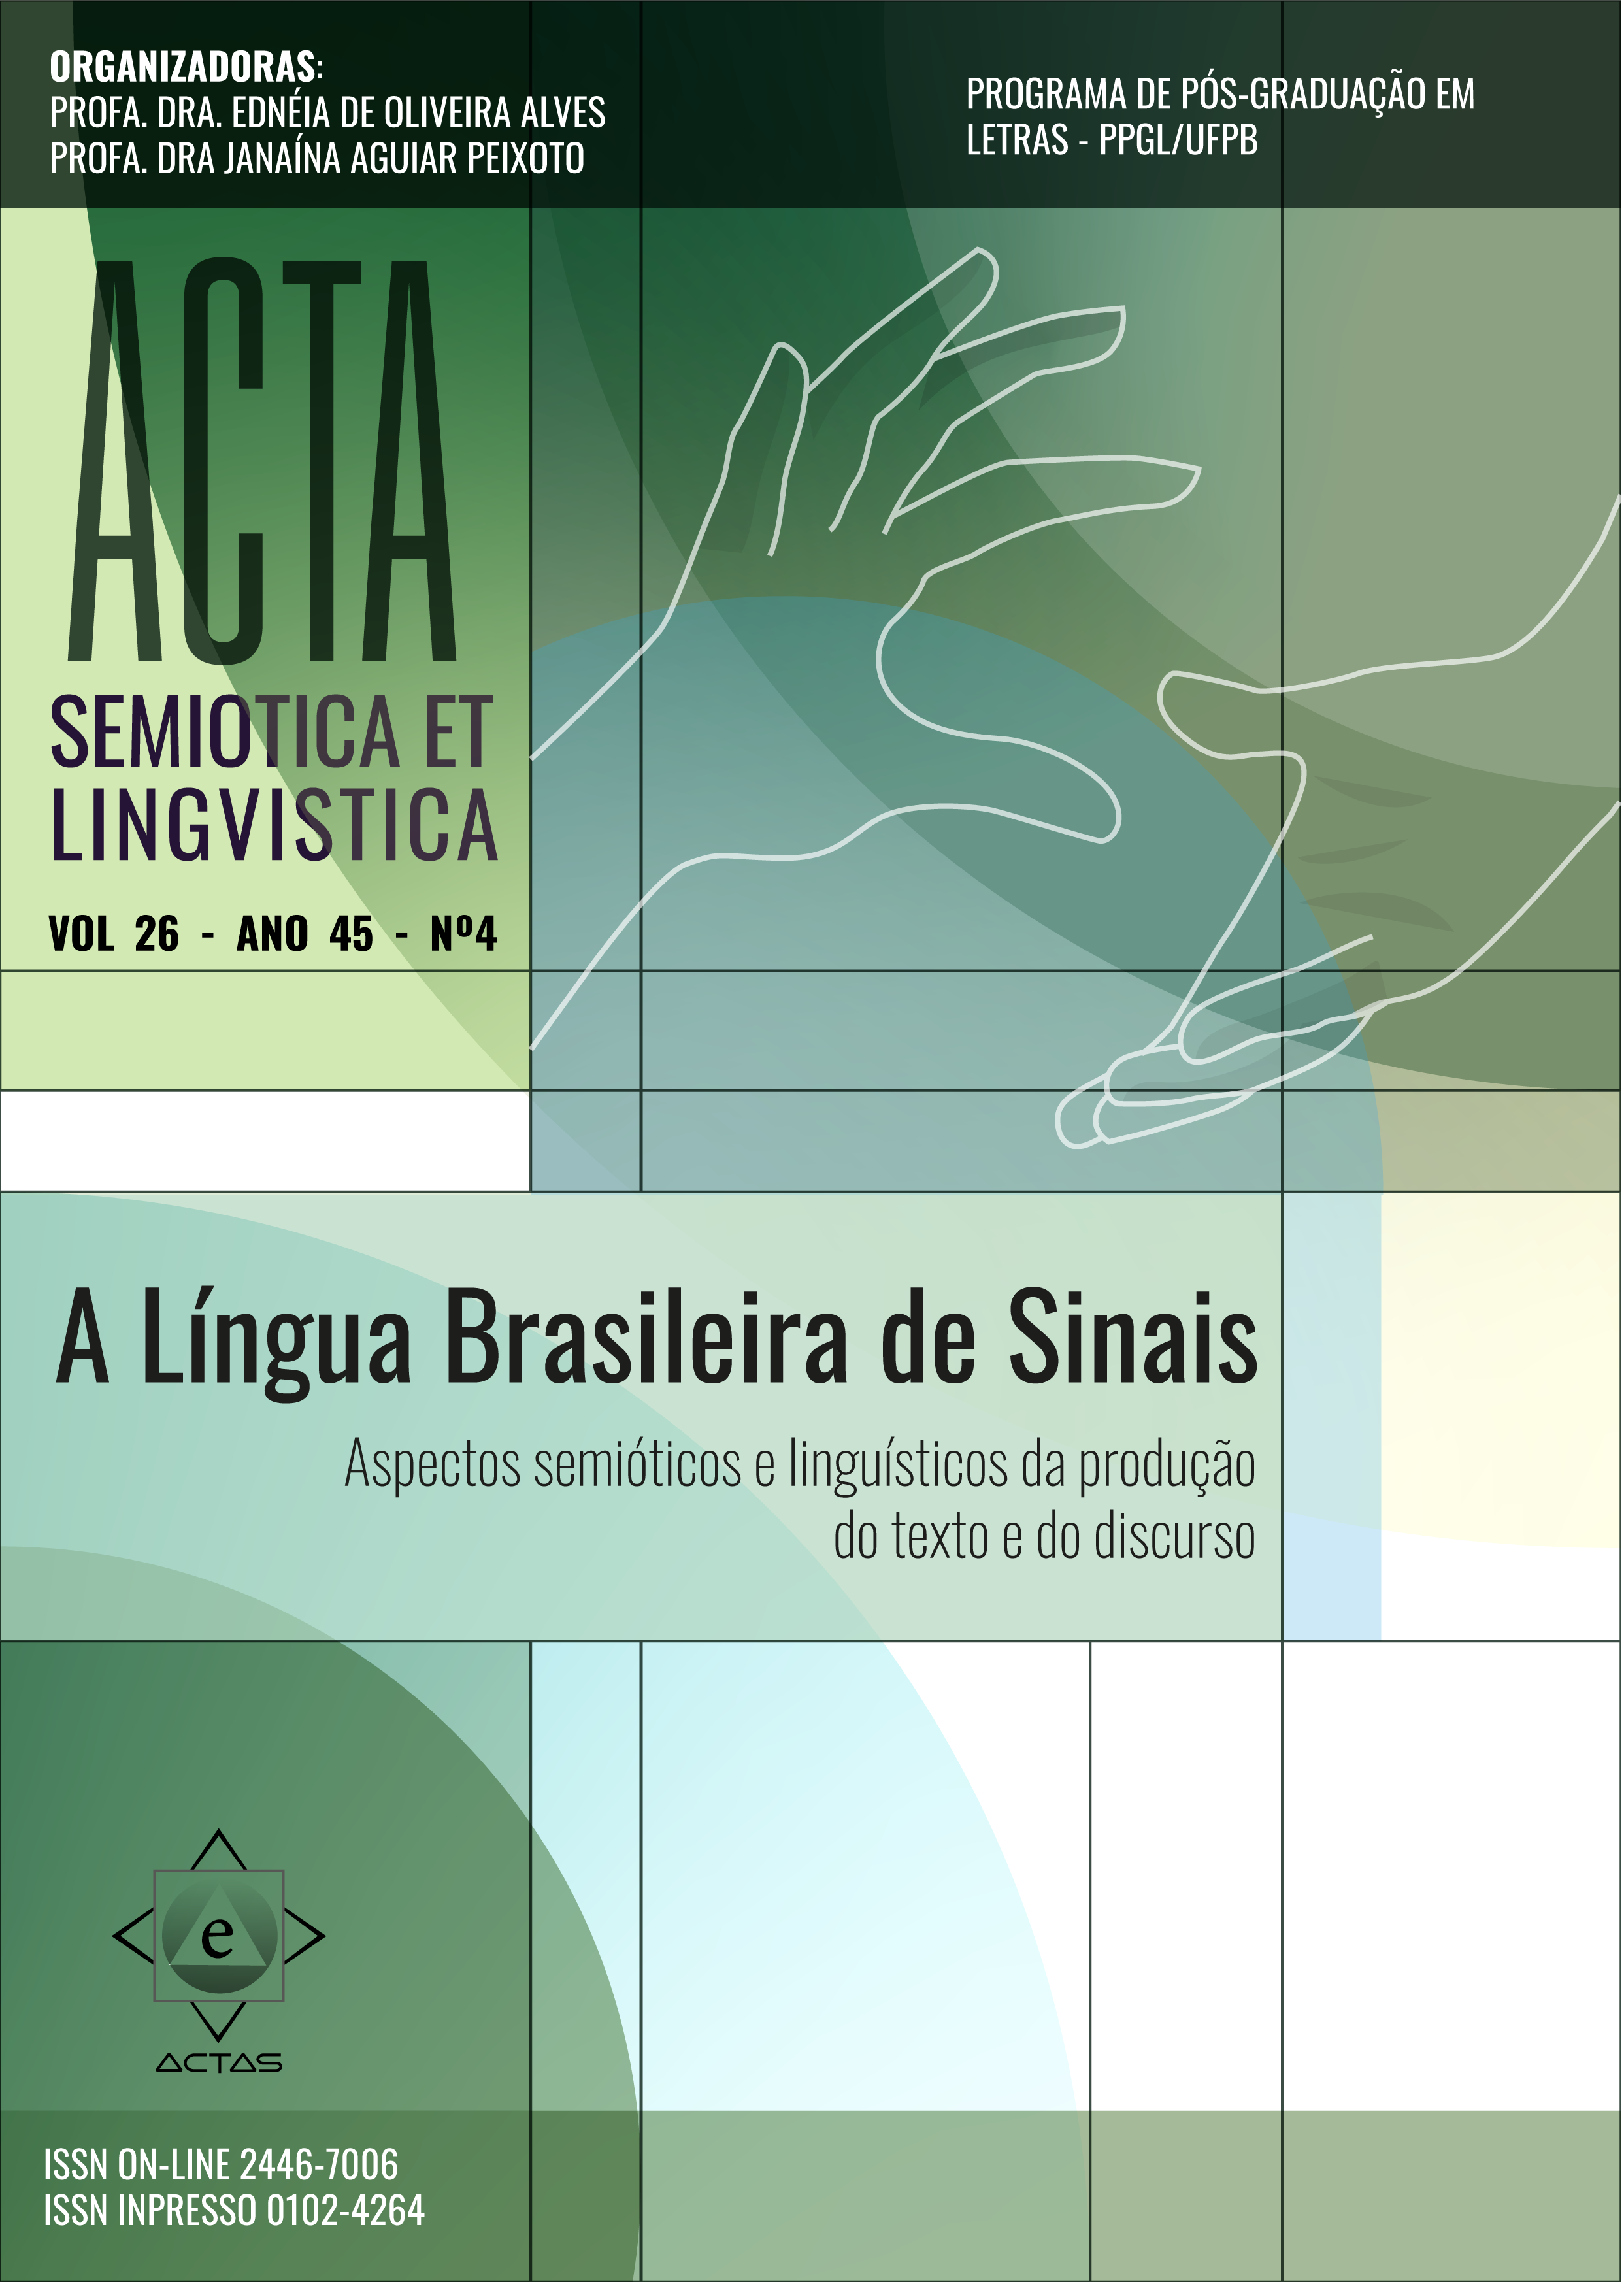 					Visualizar v. 26 n. 4 (45): A língua Brasileira de sinais: aspectos semióticos e linguísticos da produção do texto e do discurso.
				